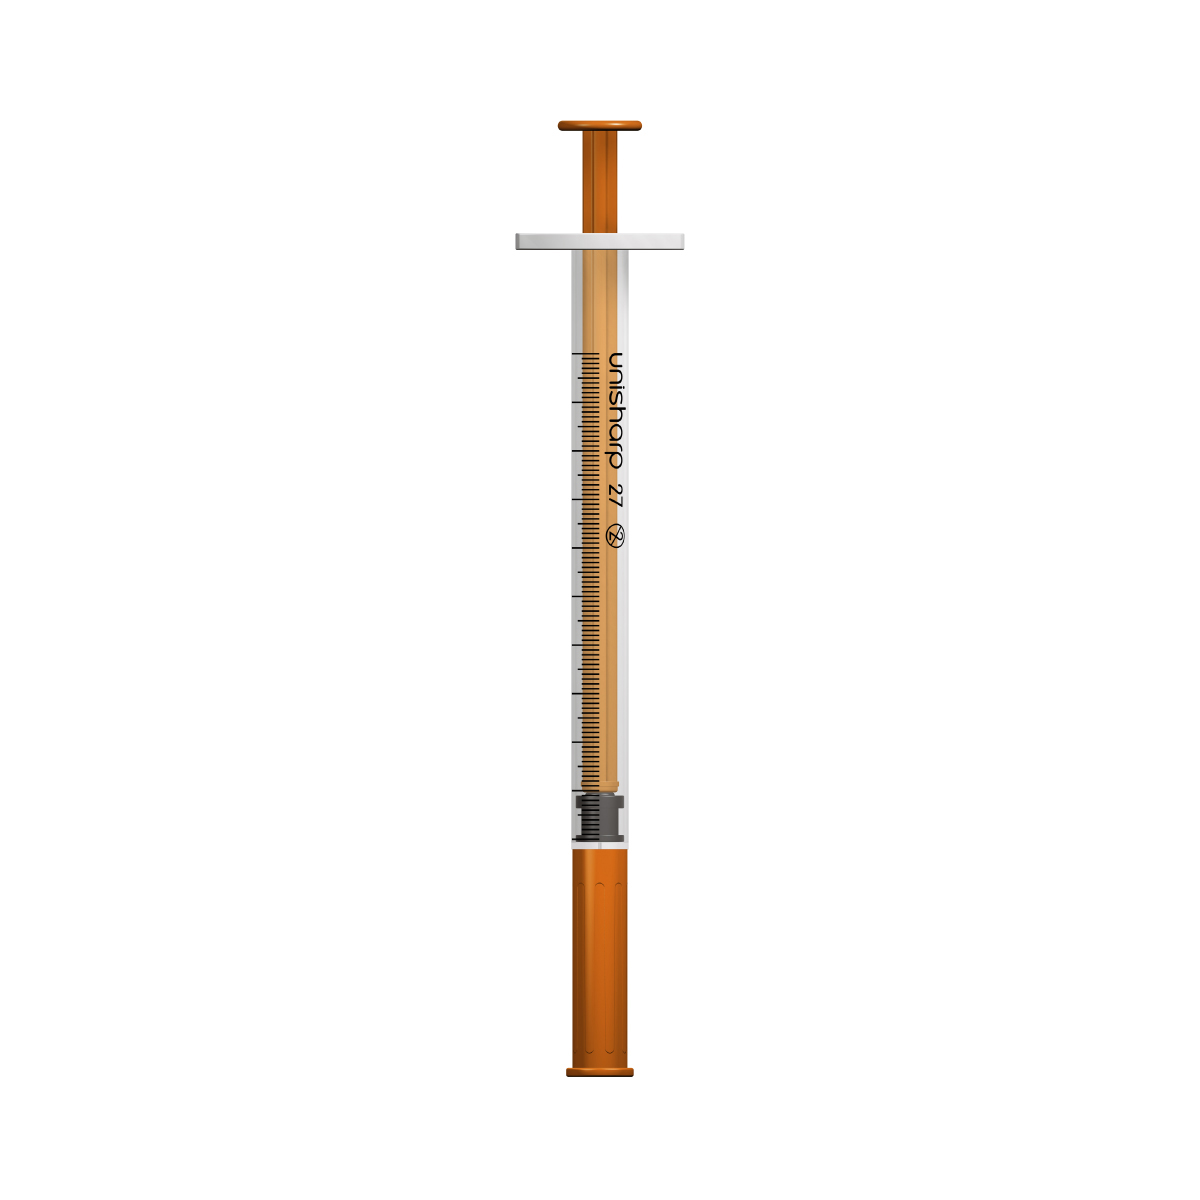 Unisharp 1ml 27G fixed needle syringe: Orange